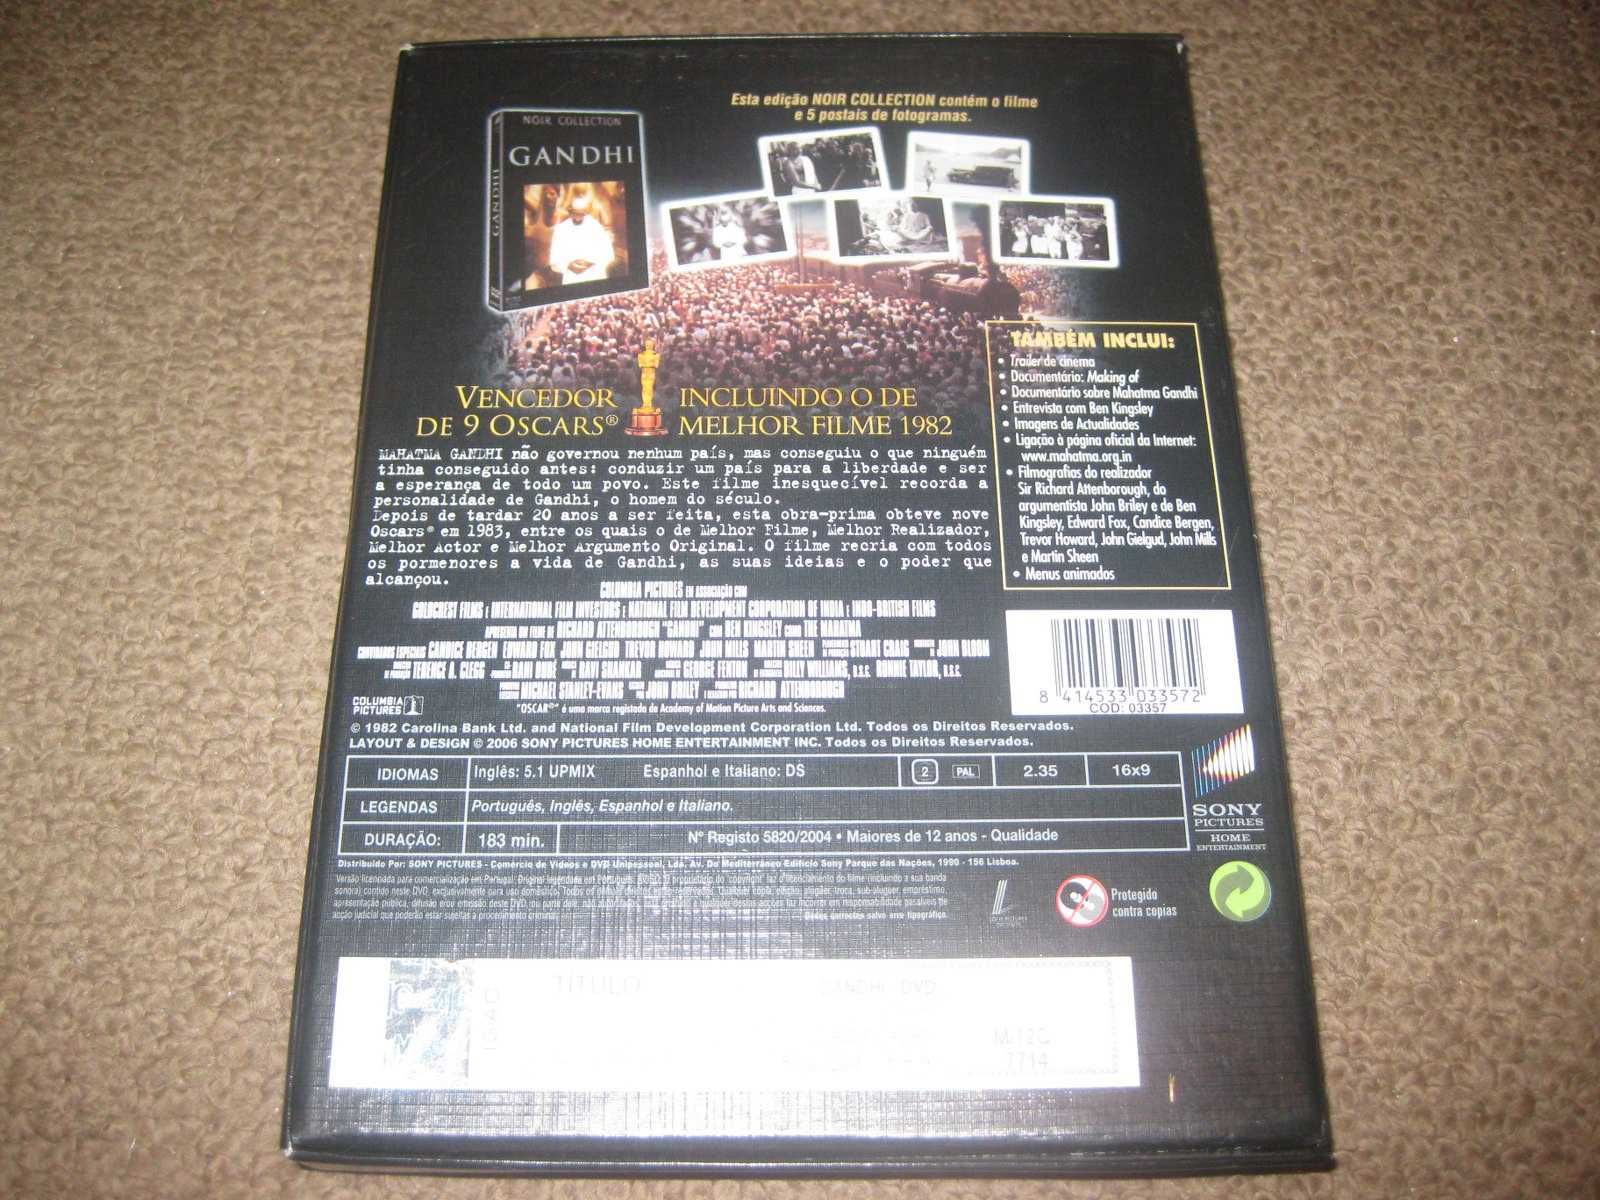 DVD "Gandhi" com Ben Kingsley/Edição Especial Noir Collection